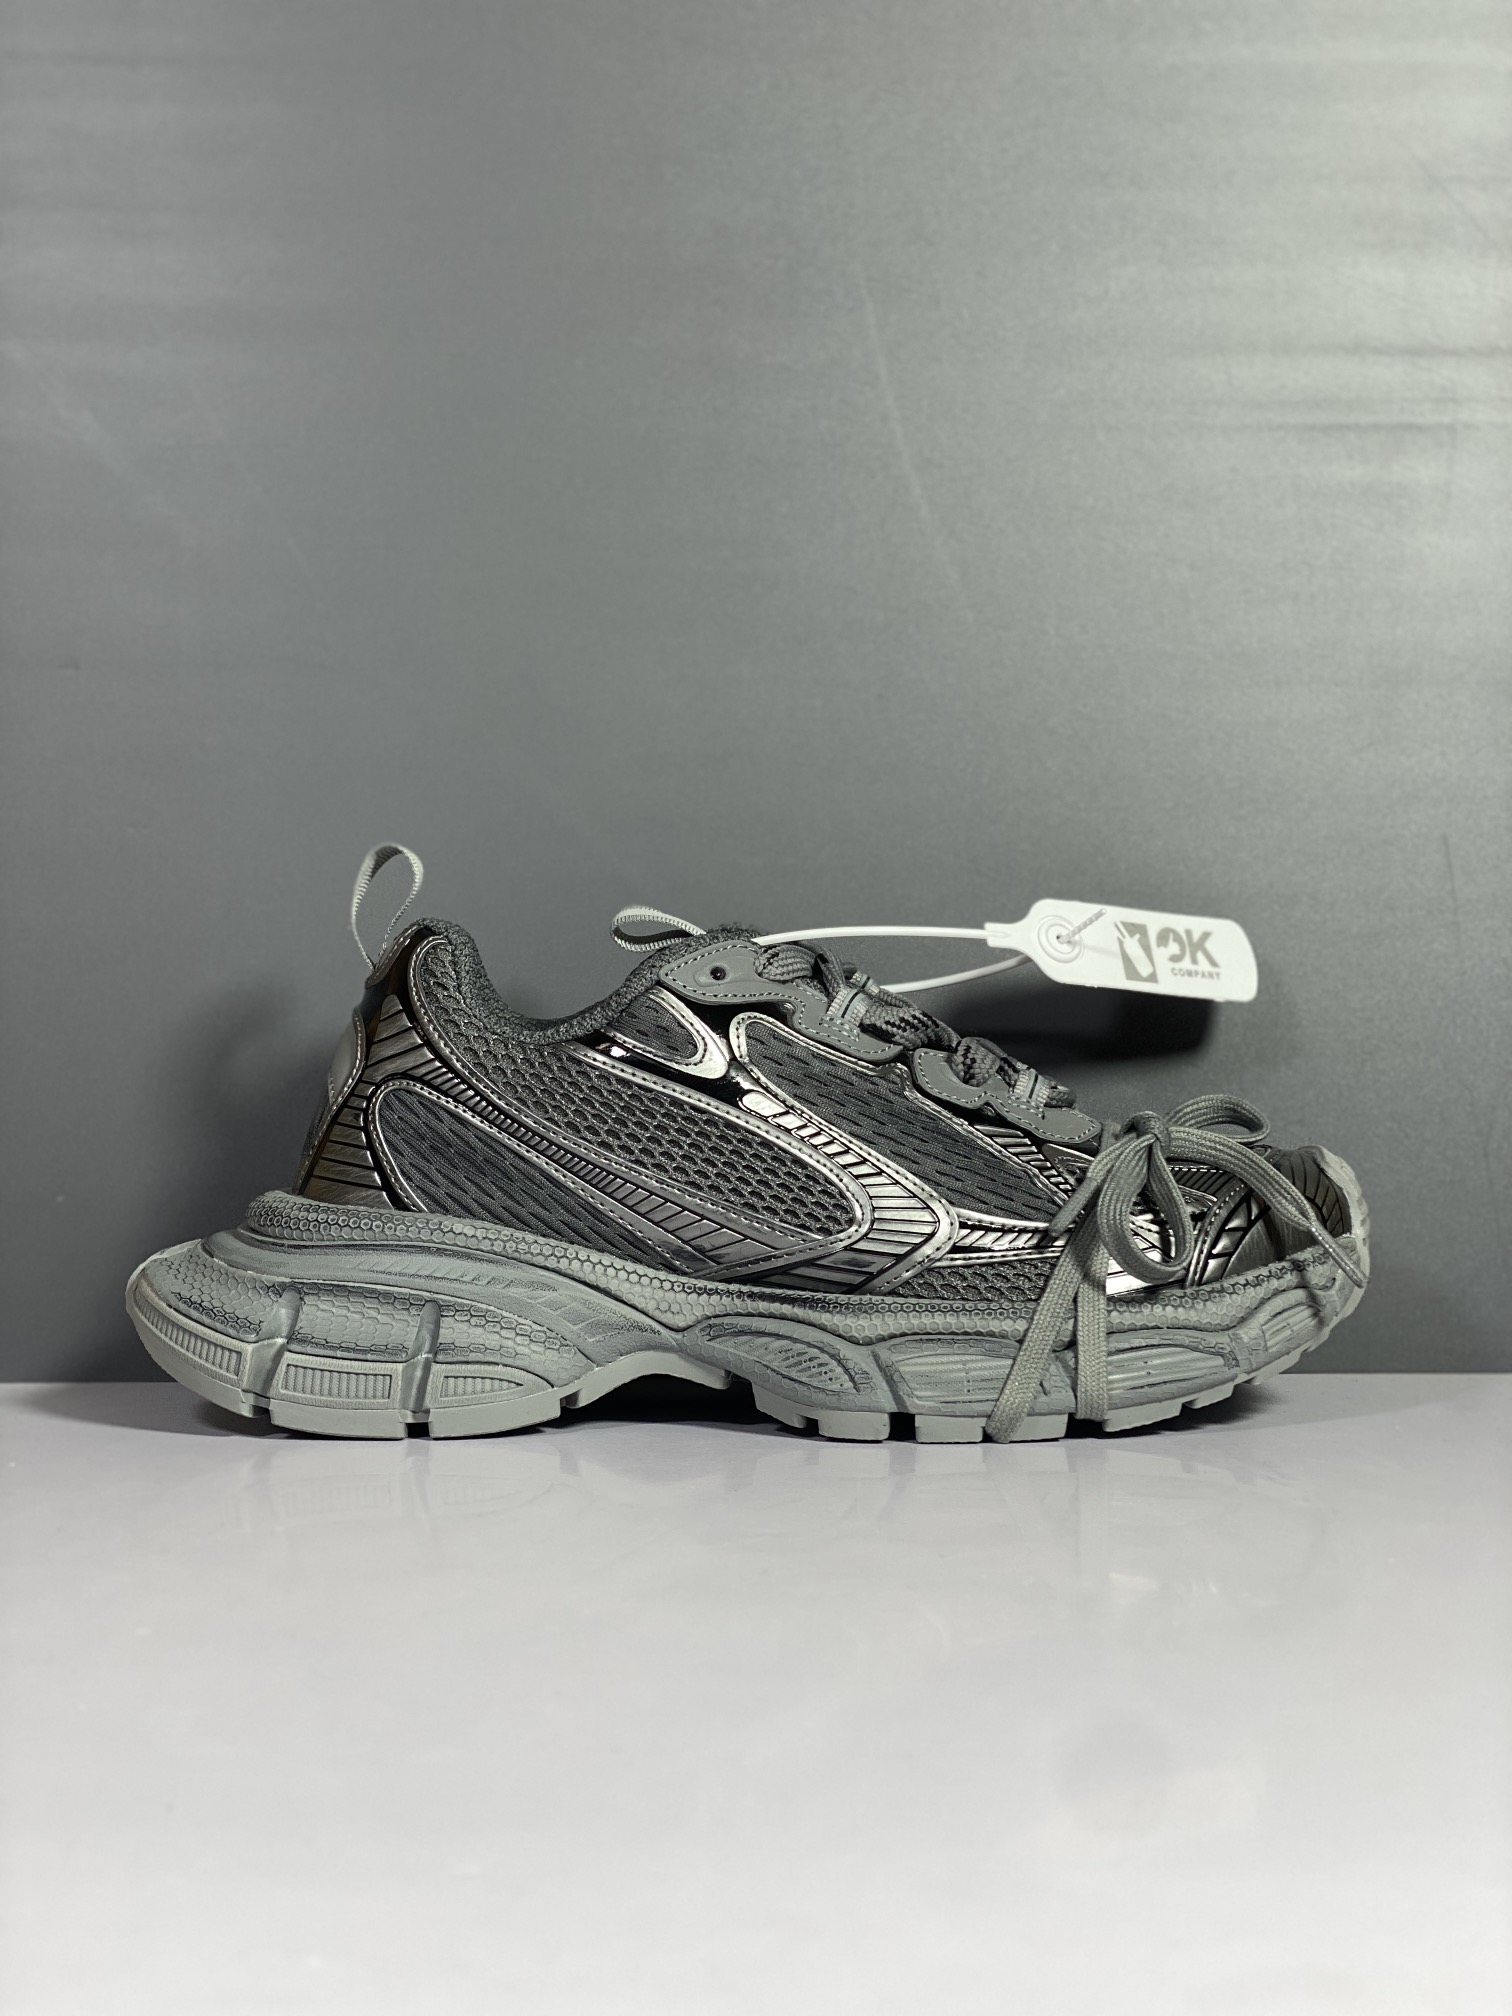 Balenciaga Phantom Sneaker 官方同步 巴黎世家全新十代潮流跑鞋 W1RB5 zbdbs1 灰色配色#增加全新设计 在延续 Track Trainer 户外轮廓和复杂鞋面结构的同时，新版本在后跟位置增加了透明带的部件尺码：35 36 37 38 39 40 41 42 43 44 45 46